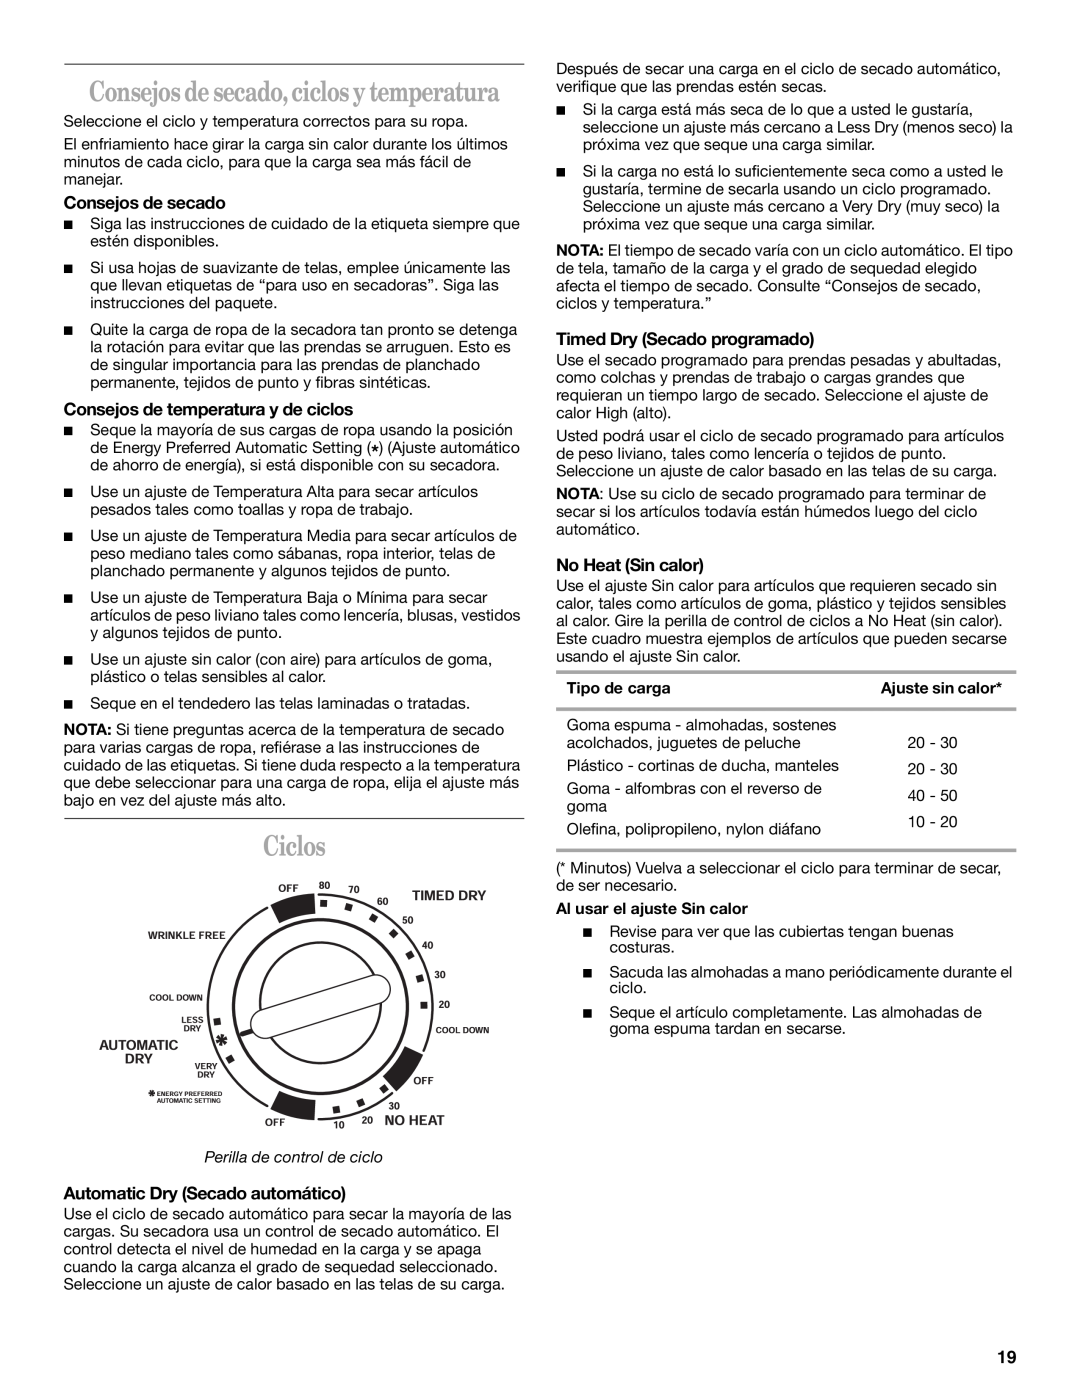 Whirlpool GCGM2991LQ0 manual Ciclos, Consejos de secado, ciclos y temperatura, Consejos de temperatura y de ciclos 